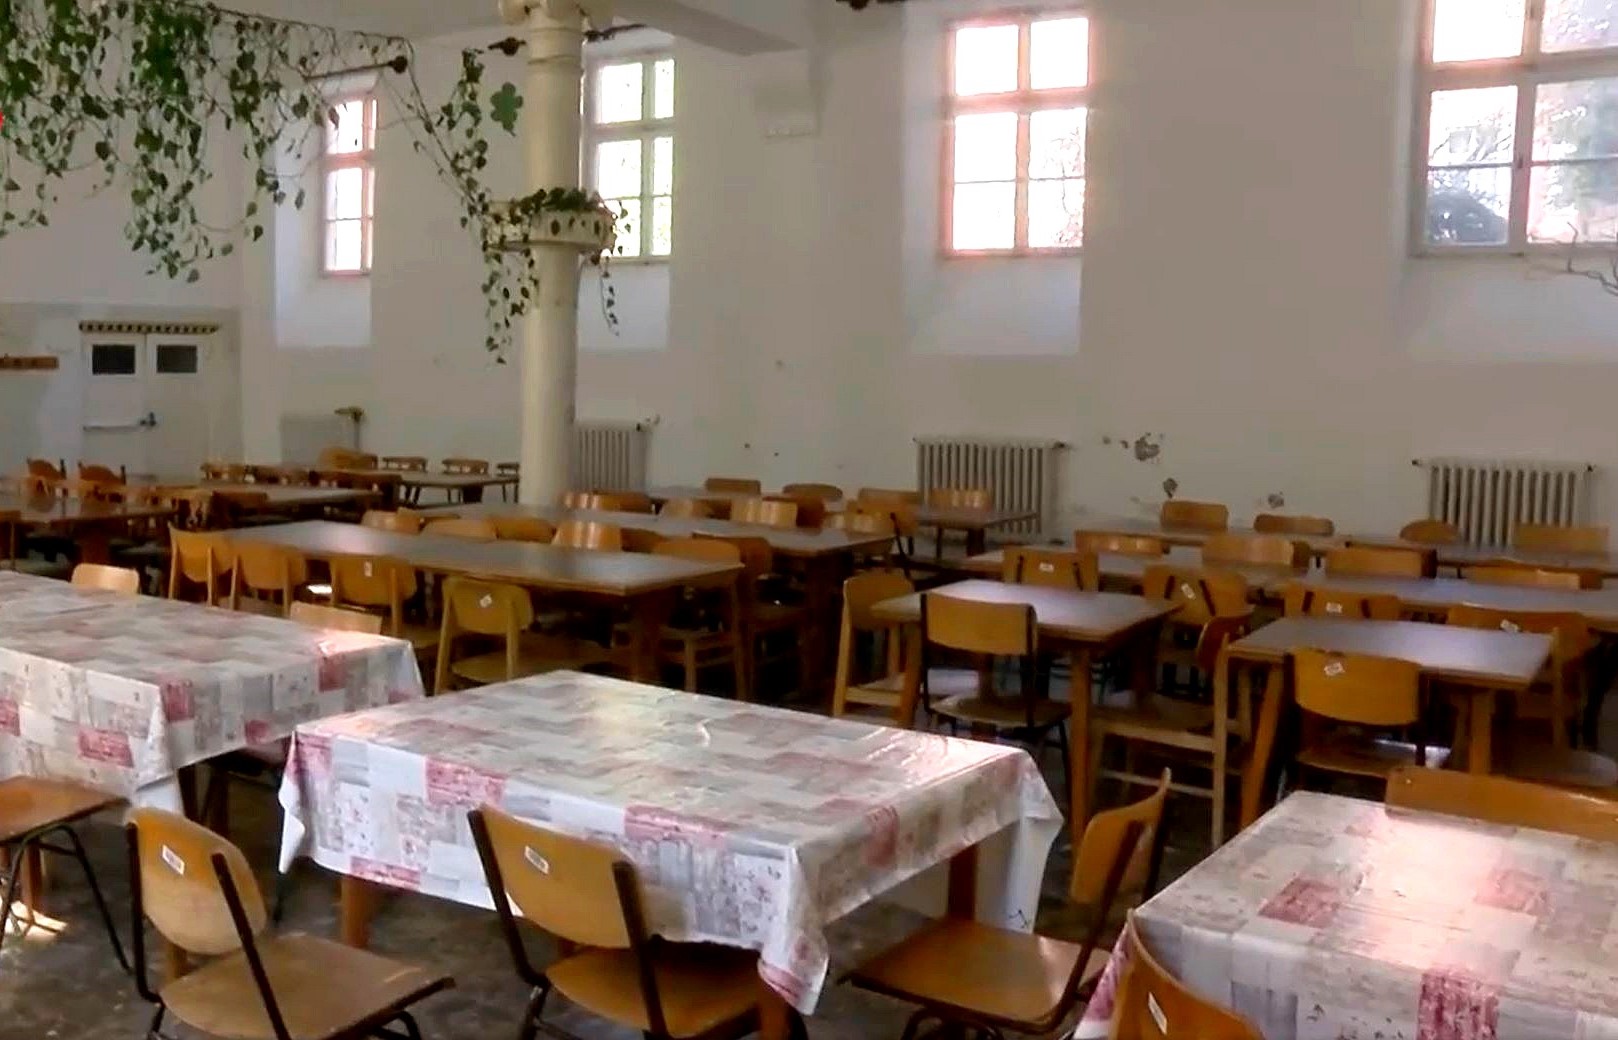 Civil adomány a Cházár iskola konyhájában 